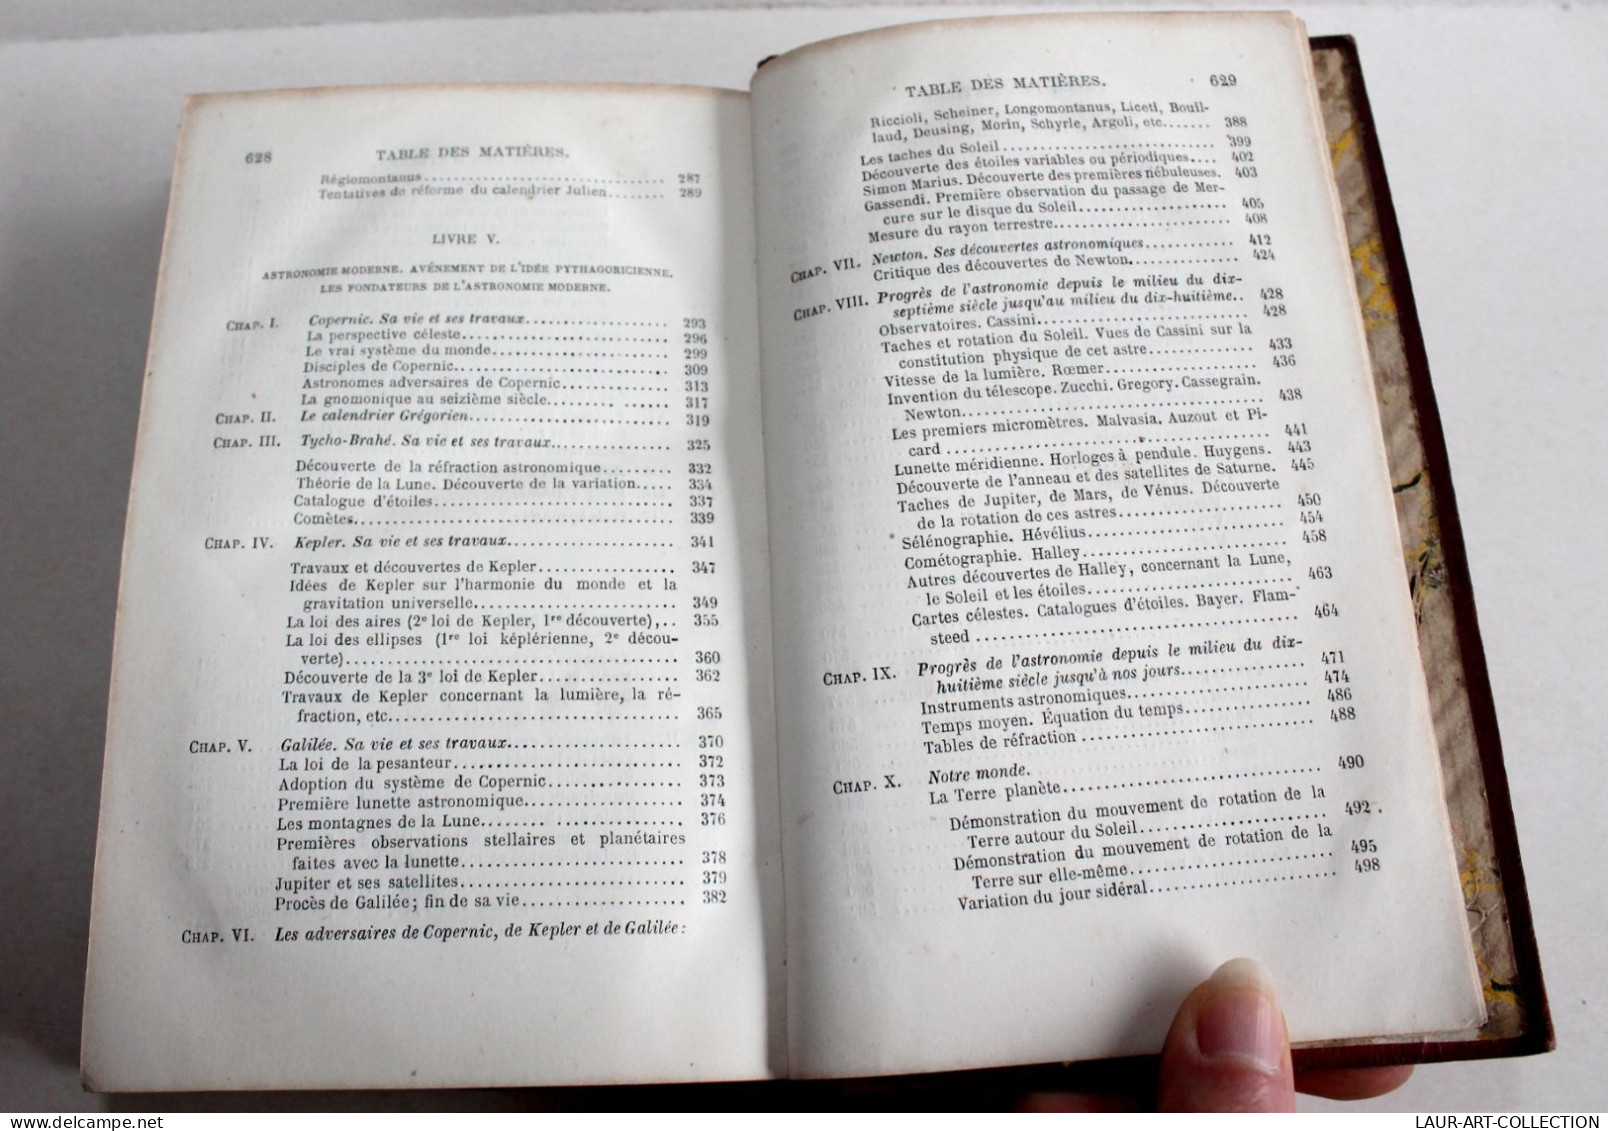 HISTOIRE DE L'ASTRONOMIE DEPUIS SES ORIGINES JUSQU'A NOS JOURS par HOEFER 1873 / ANCIEN LIVRE XIXe SIECLE (2603.49)